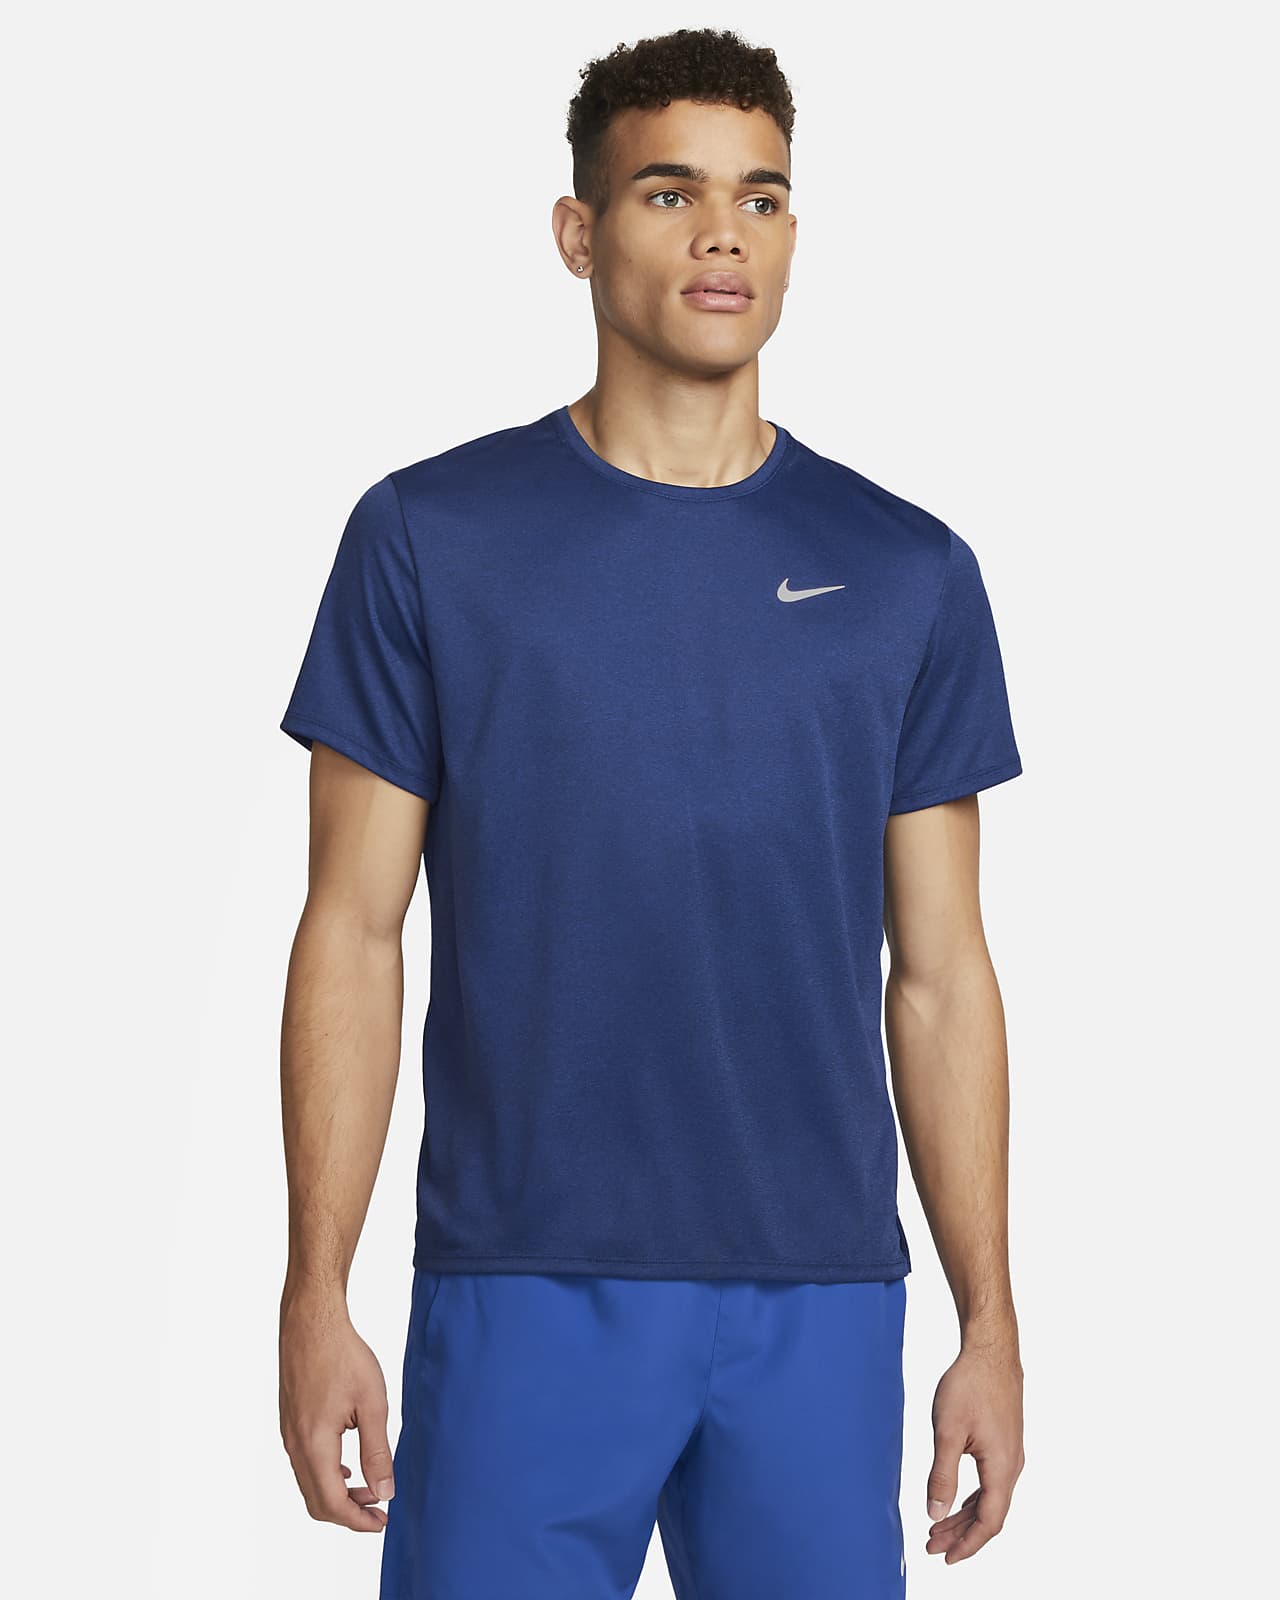 noodsituatie Onaangeroerd Marty Fielding Nike Miler Men's Dri-FIT UV Short-Sleeve Running Top. Nike LU